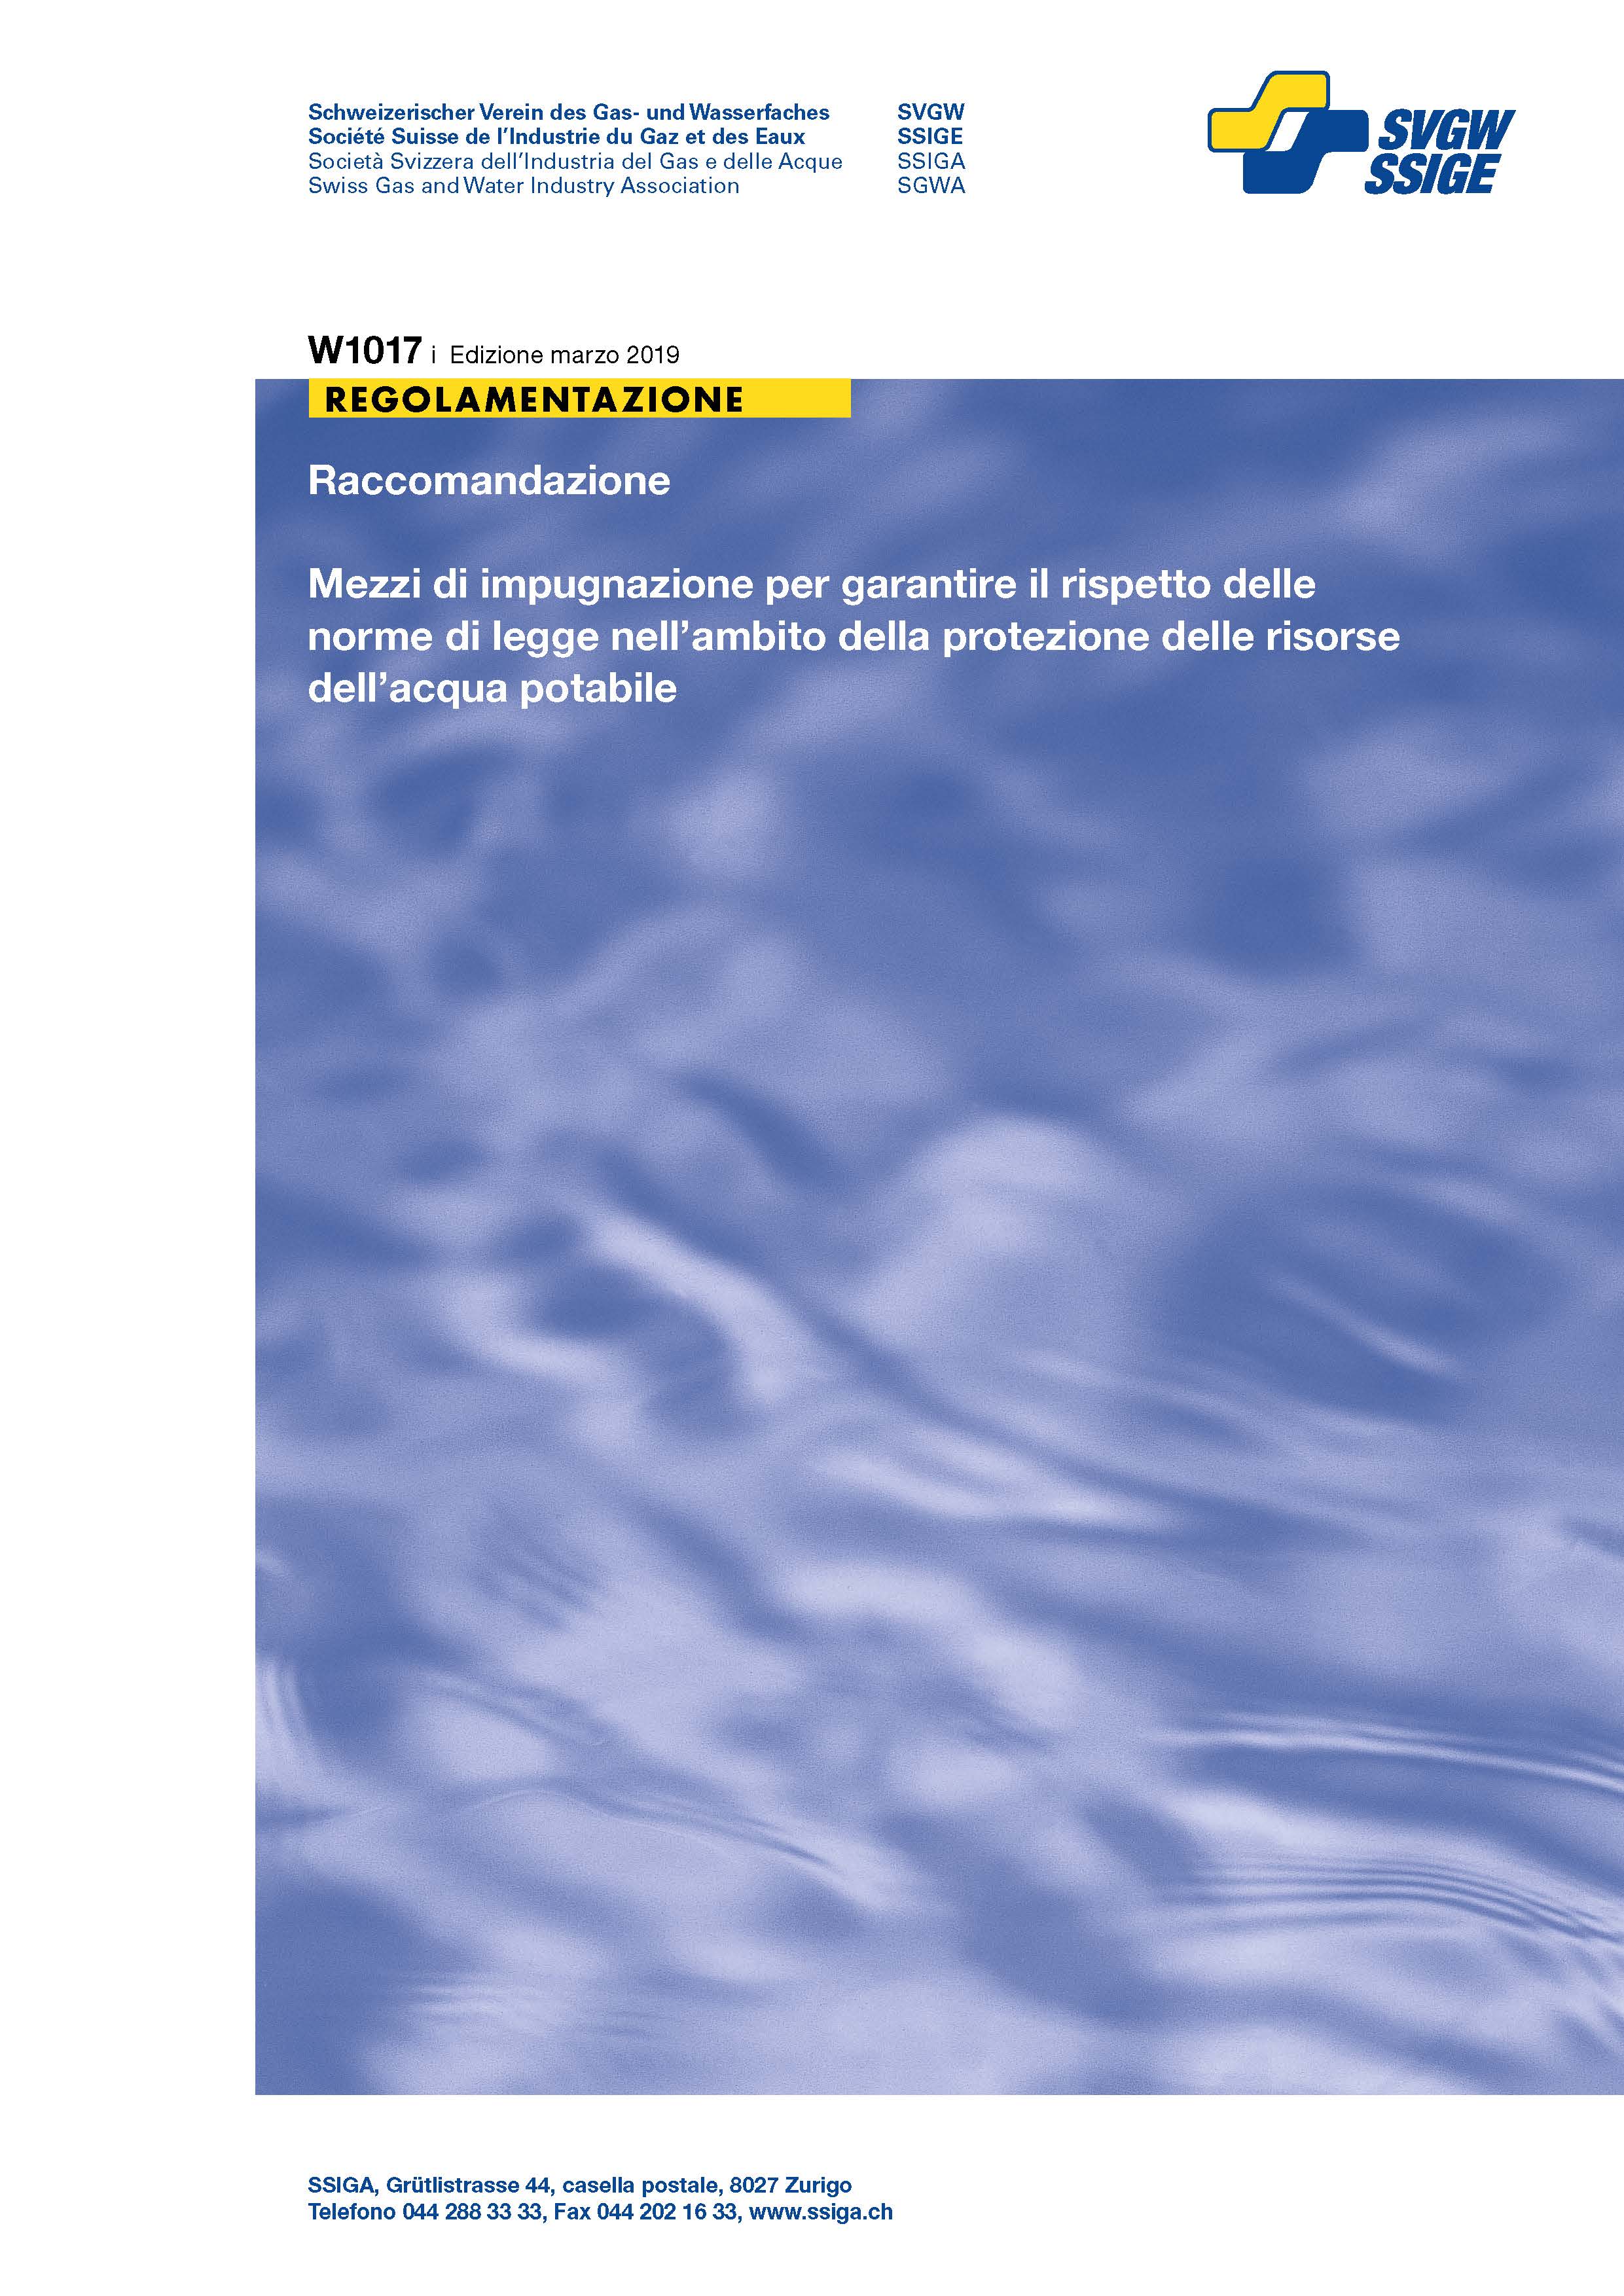 W1017 i Raccomandazione; Mezzi di impugnazione per garantire il rispetto delle norme di legge nell’ambito della protezione delle risorse dell’acqua potabile (2)